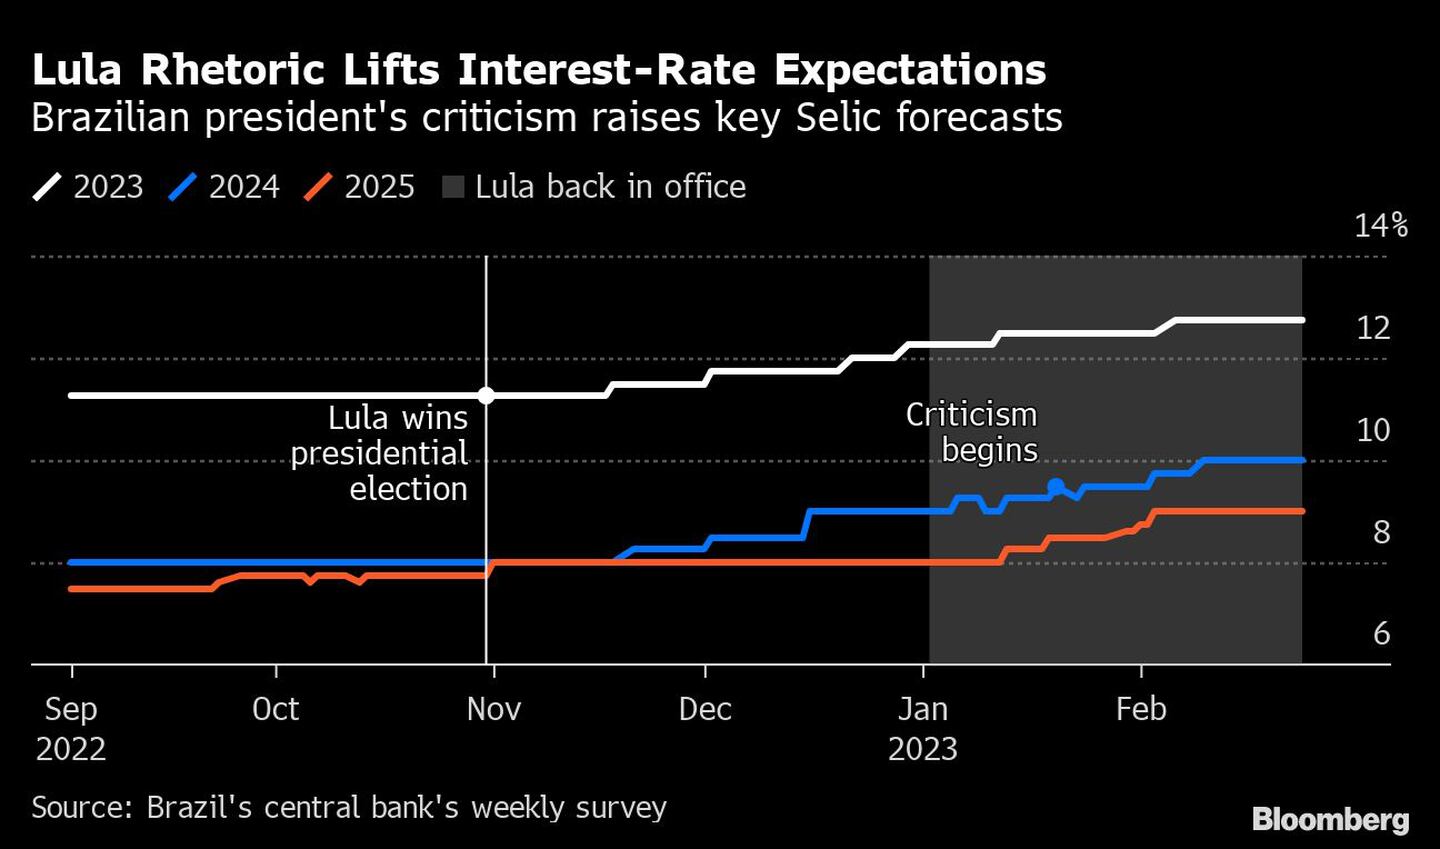 La retórica de lula eleva las perspectivas de las tasas de Brasildfd